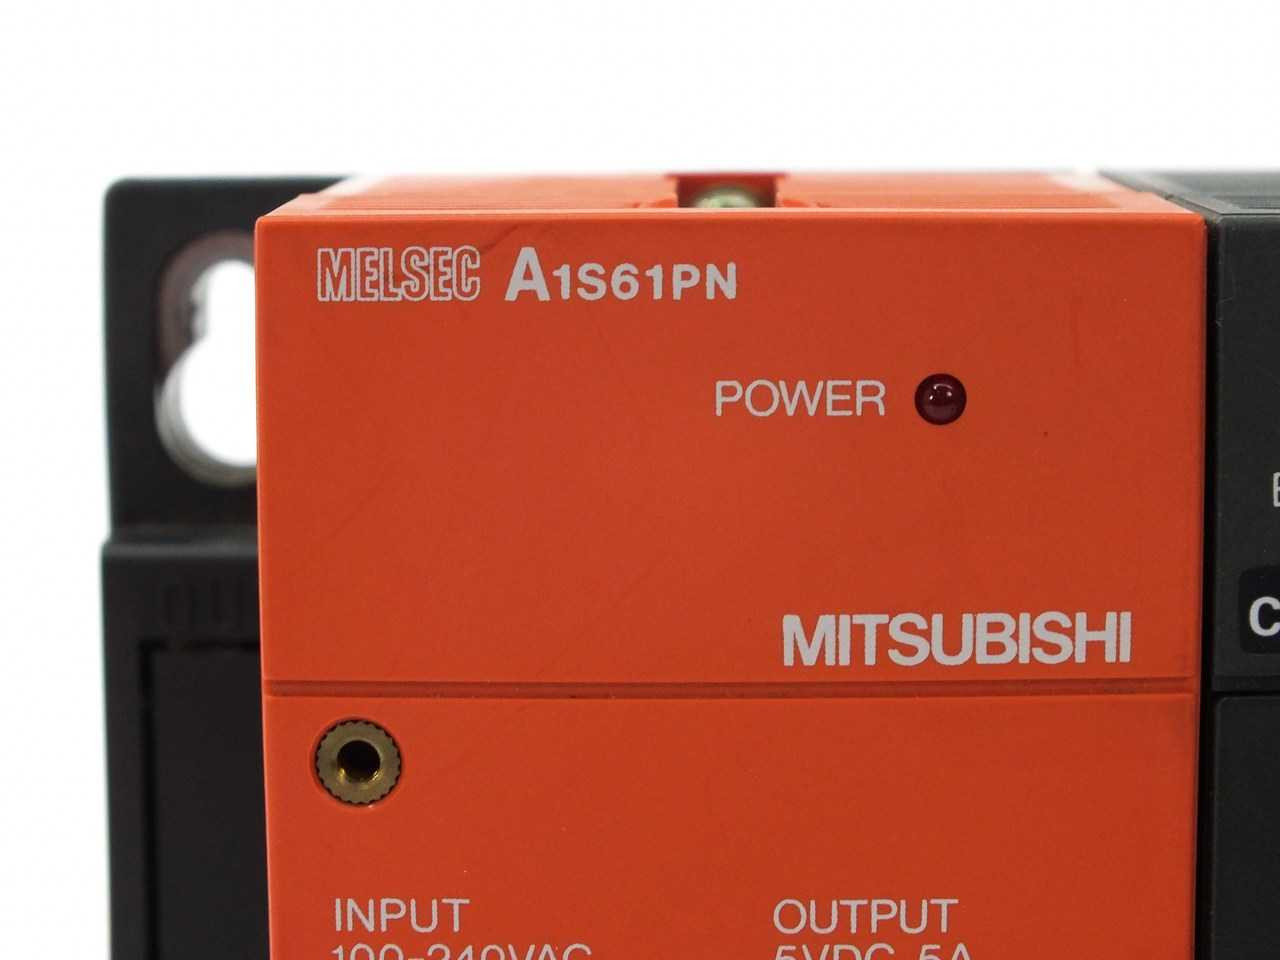 Mitsubishi A2SHCPU Melsec PLC w/ A1S61PN Power Supply -A1SX42 